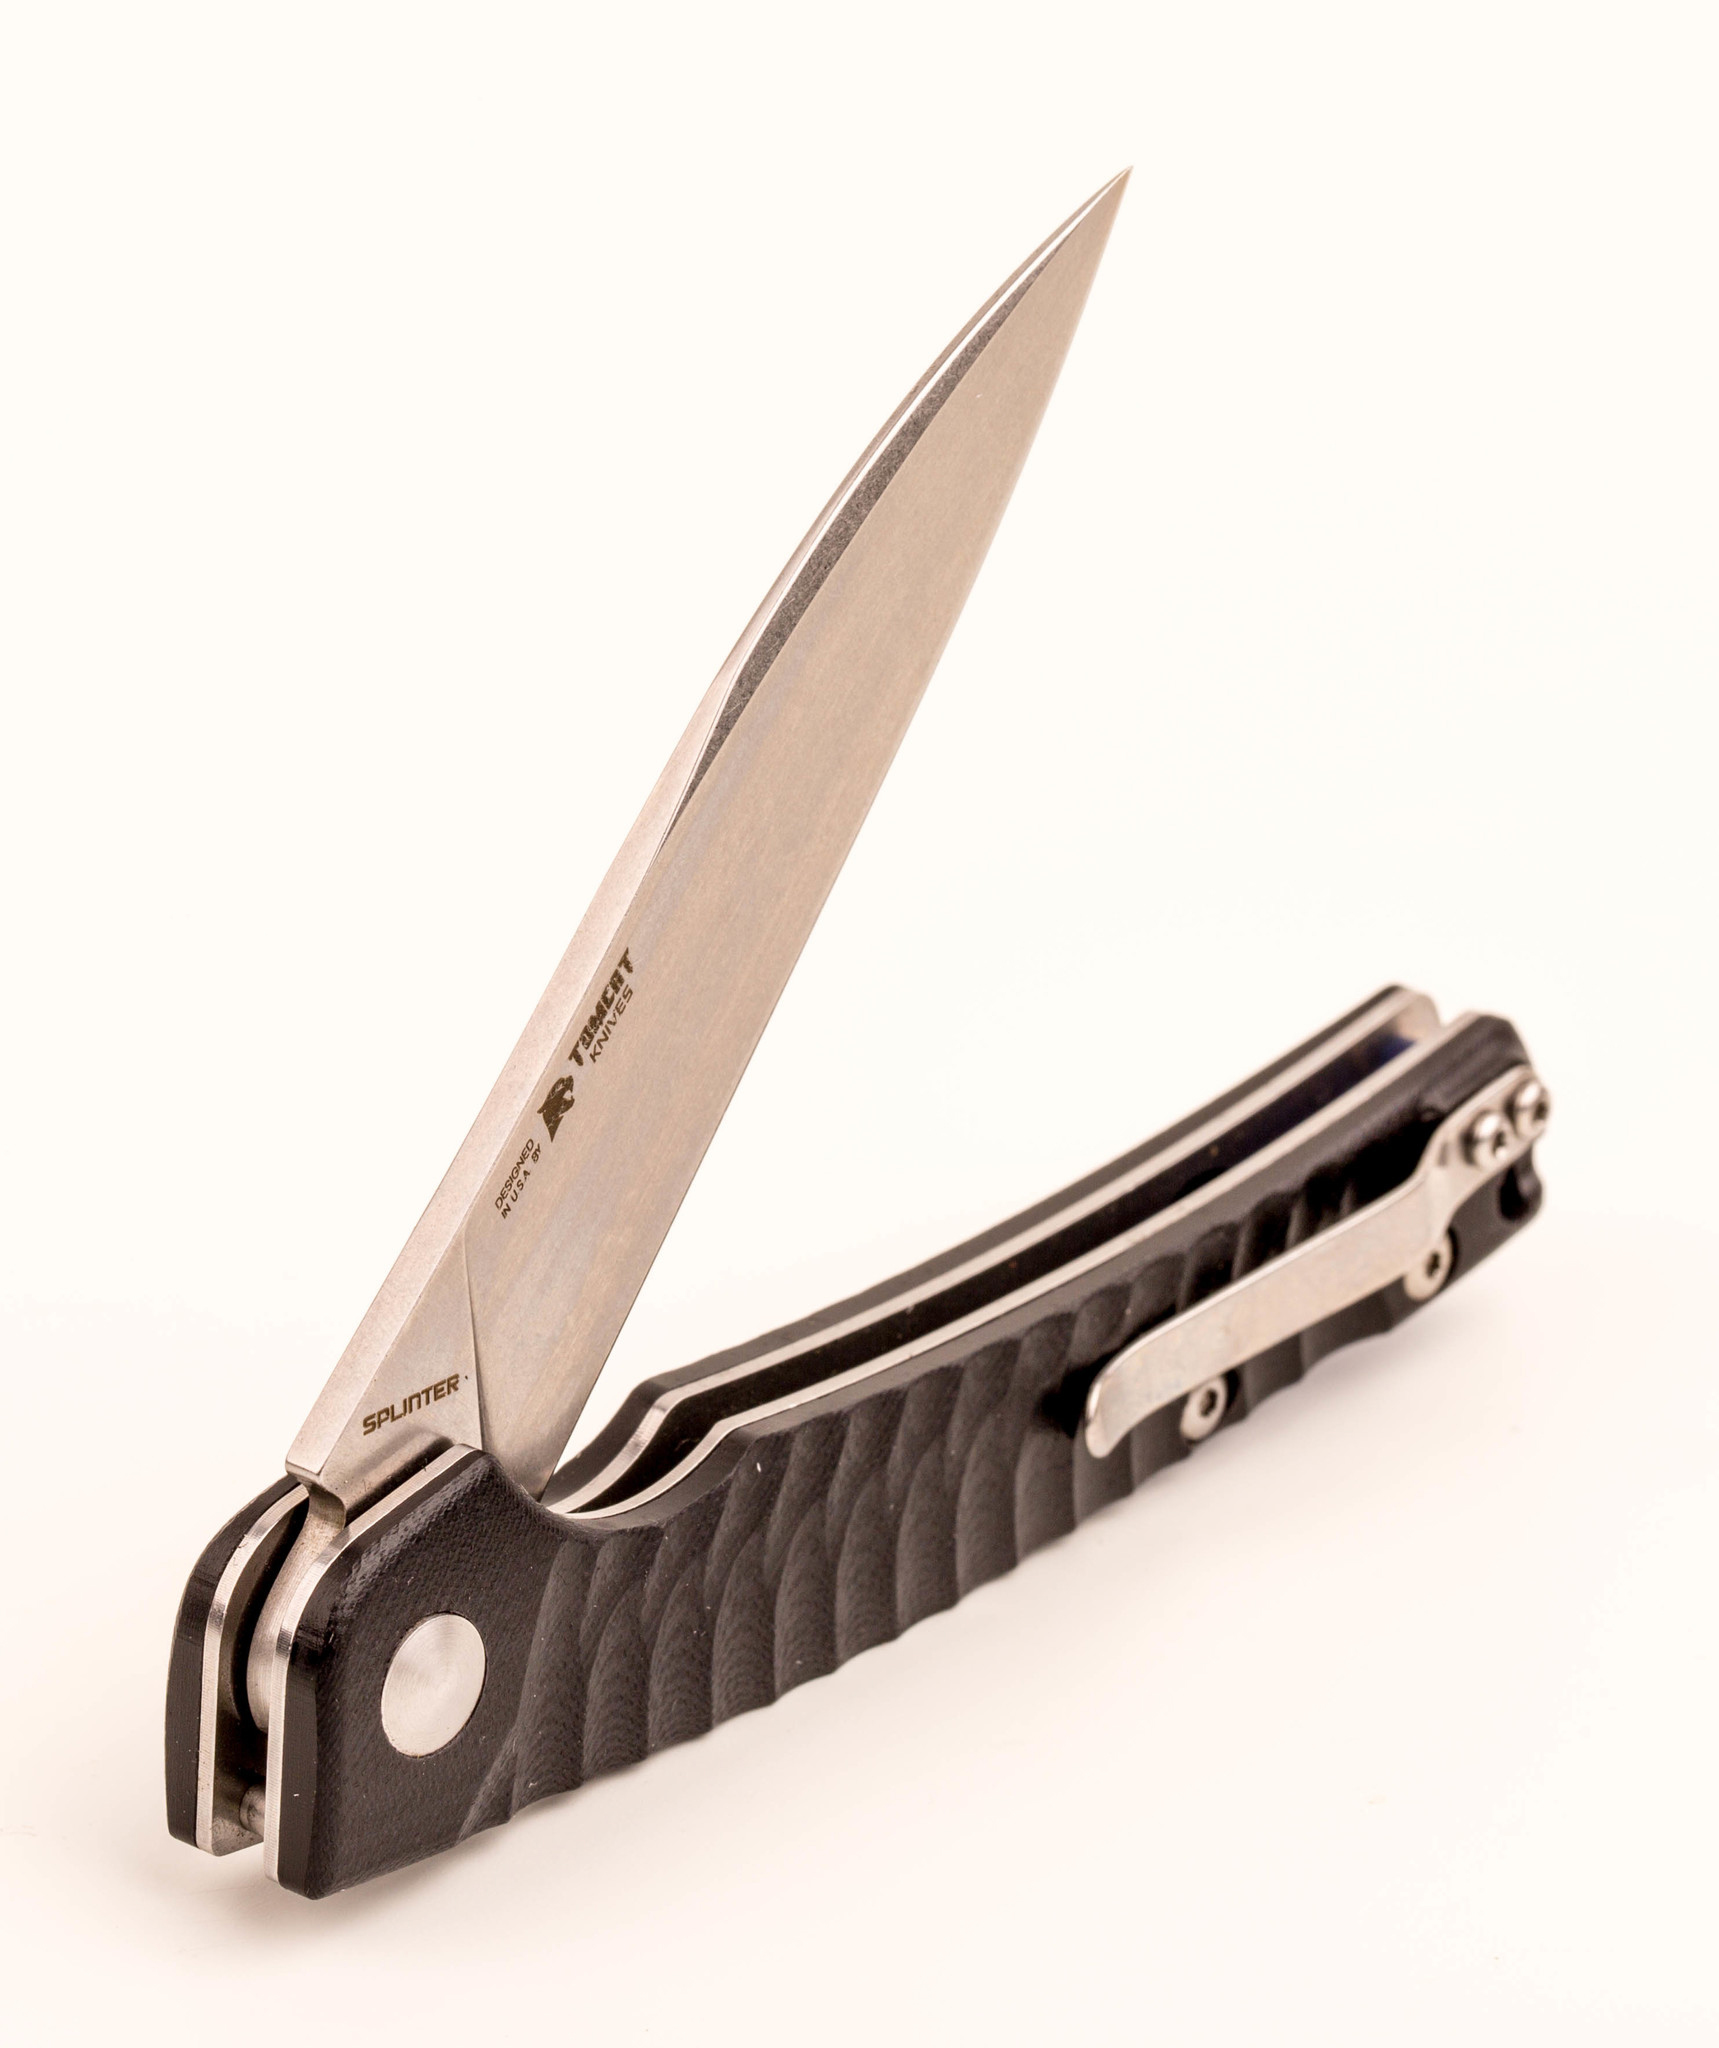 Складной нож Kizer Splinter, сталь N690, рукоять G10 - фото 7